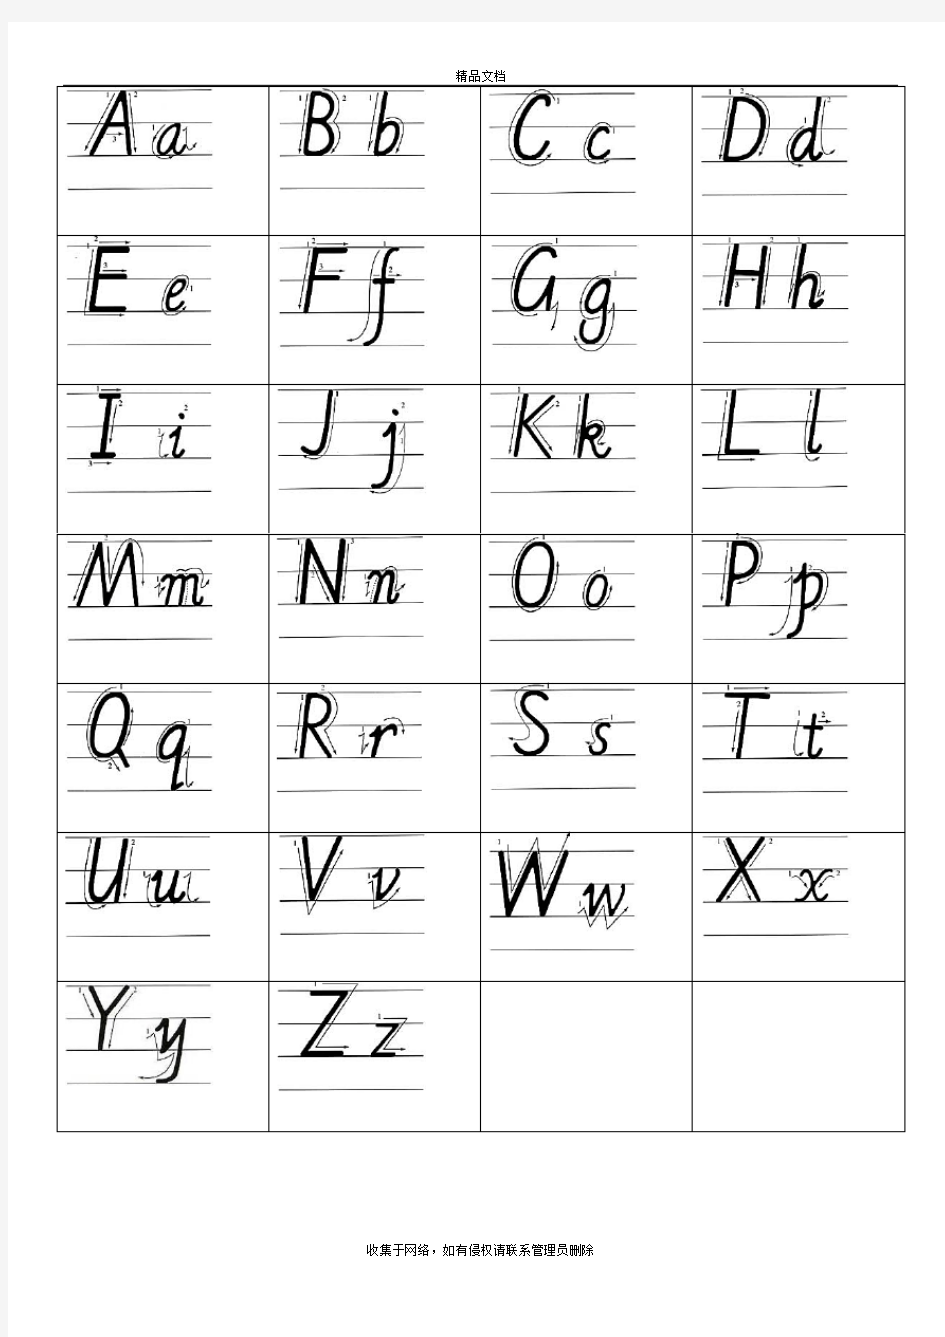 小学 三年级 英语 26 英文字母 手写体 描红 字帖 有笔顺 可仿写教学文案